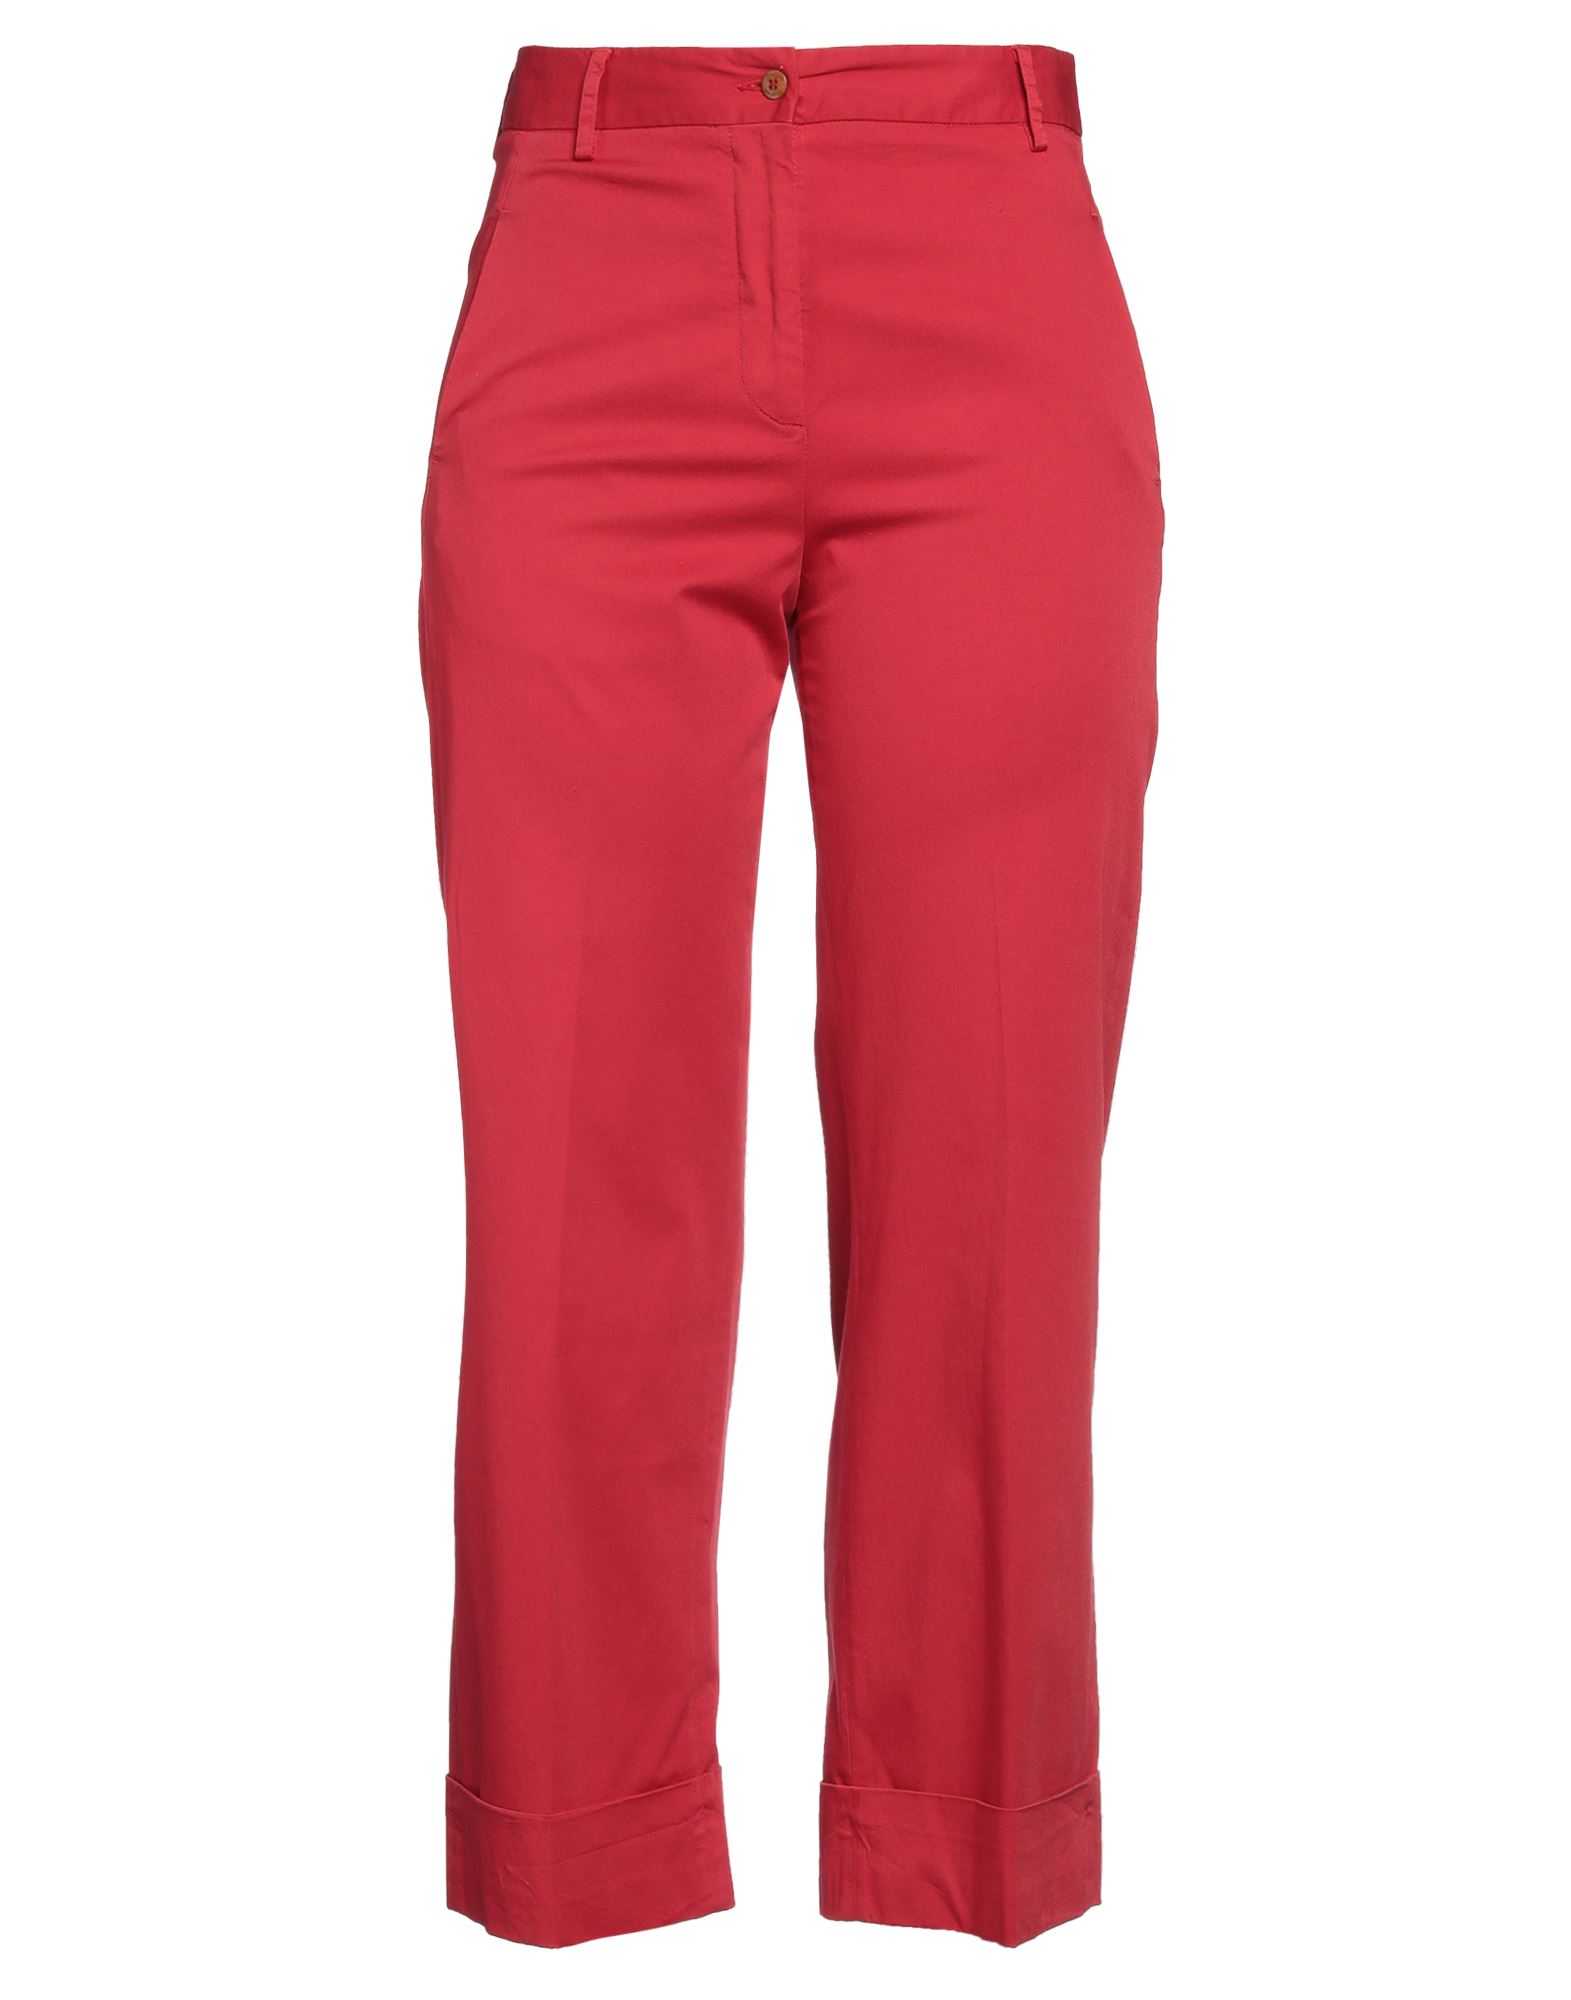 Brag-wette Pants In Red